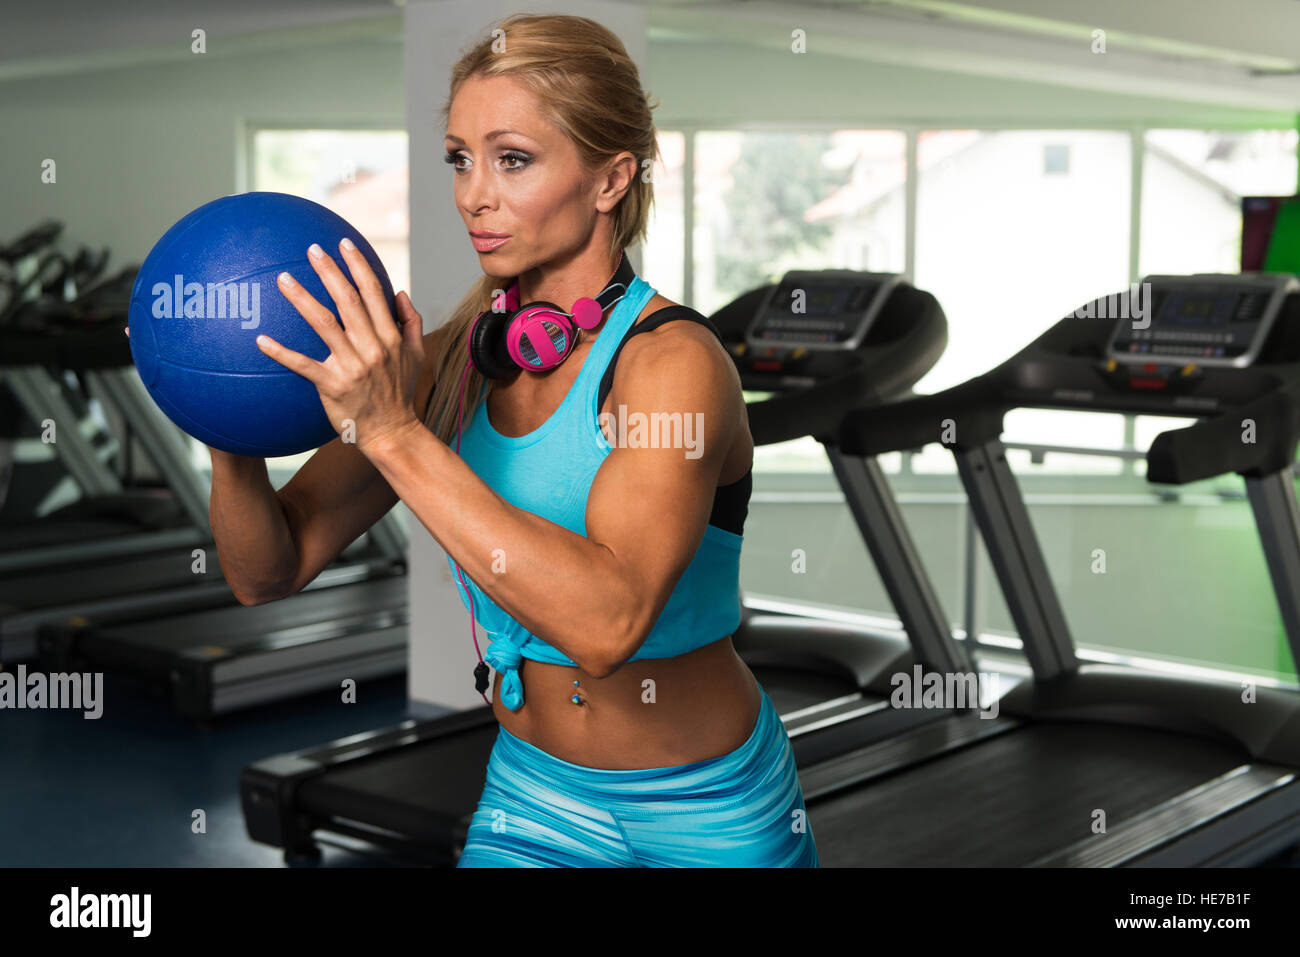 Reife Frau, die das Training mit Medizinball In der Turnhalle und biegen Muskeln - muskulöse athletische Bodybuilder Fitness-Modell Stockfoto